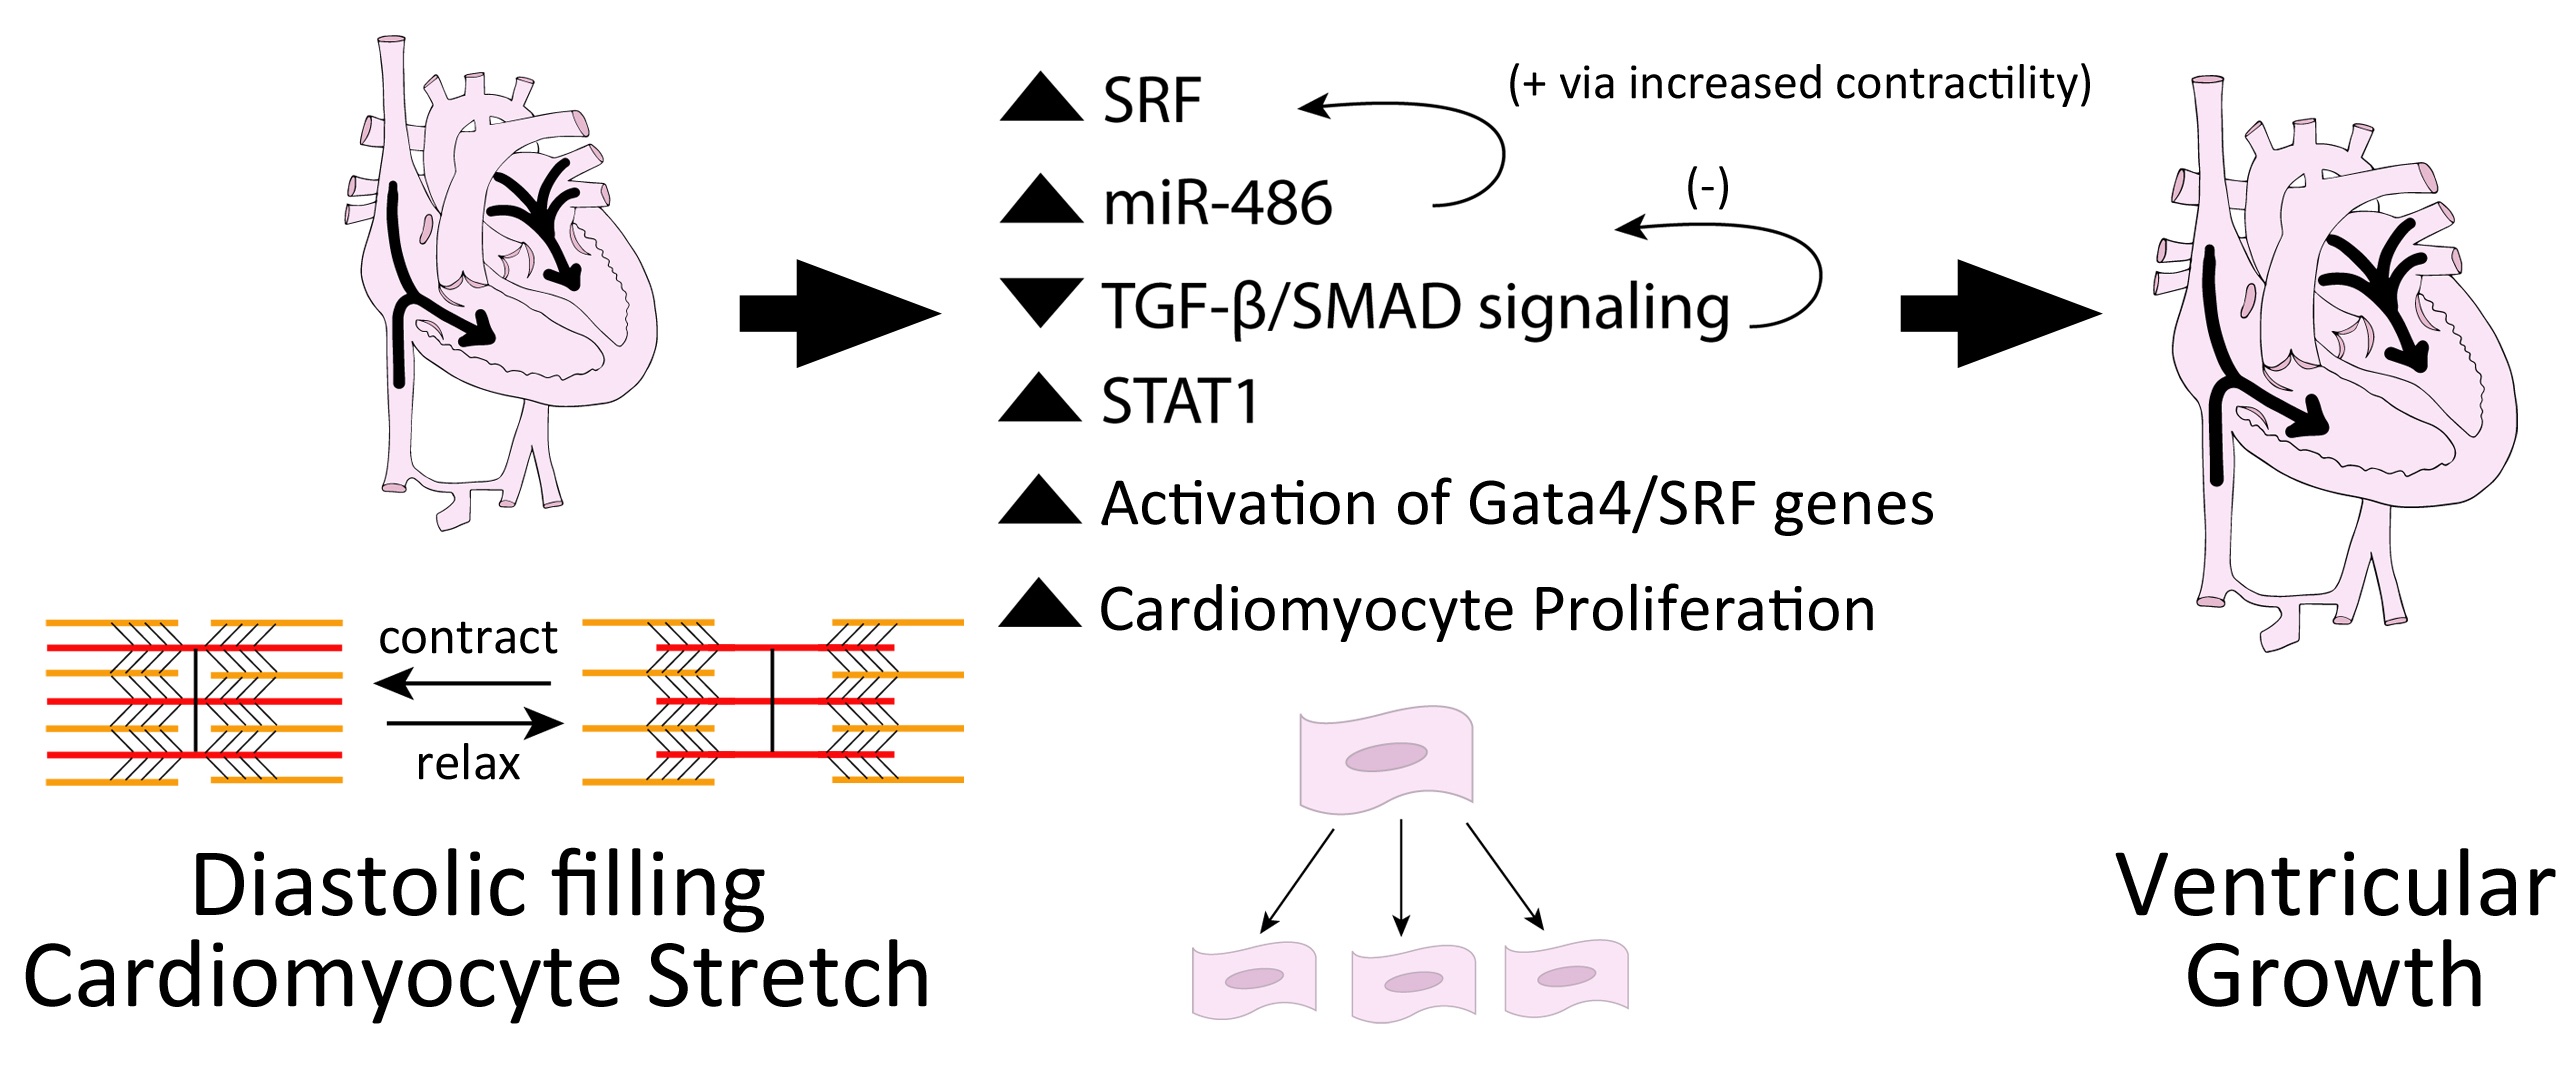 miR-486 alters cardiac signaling